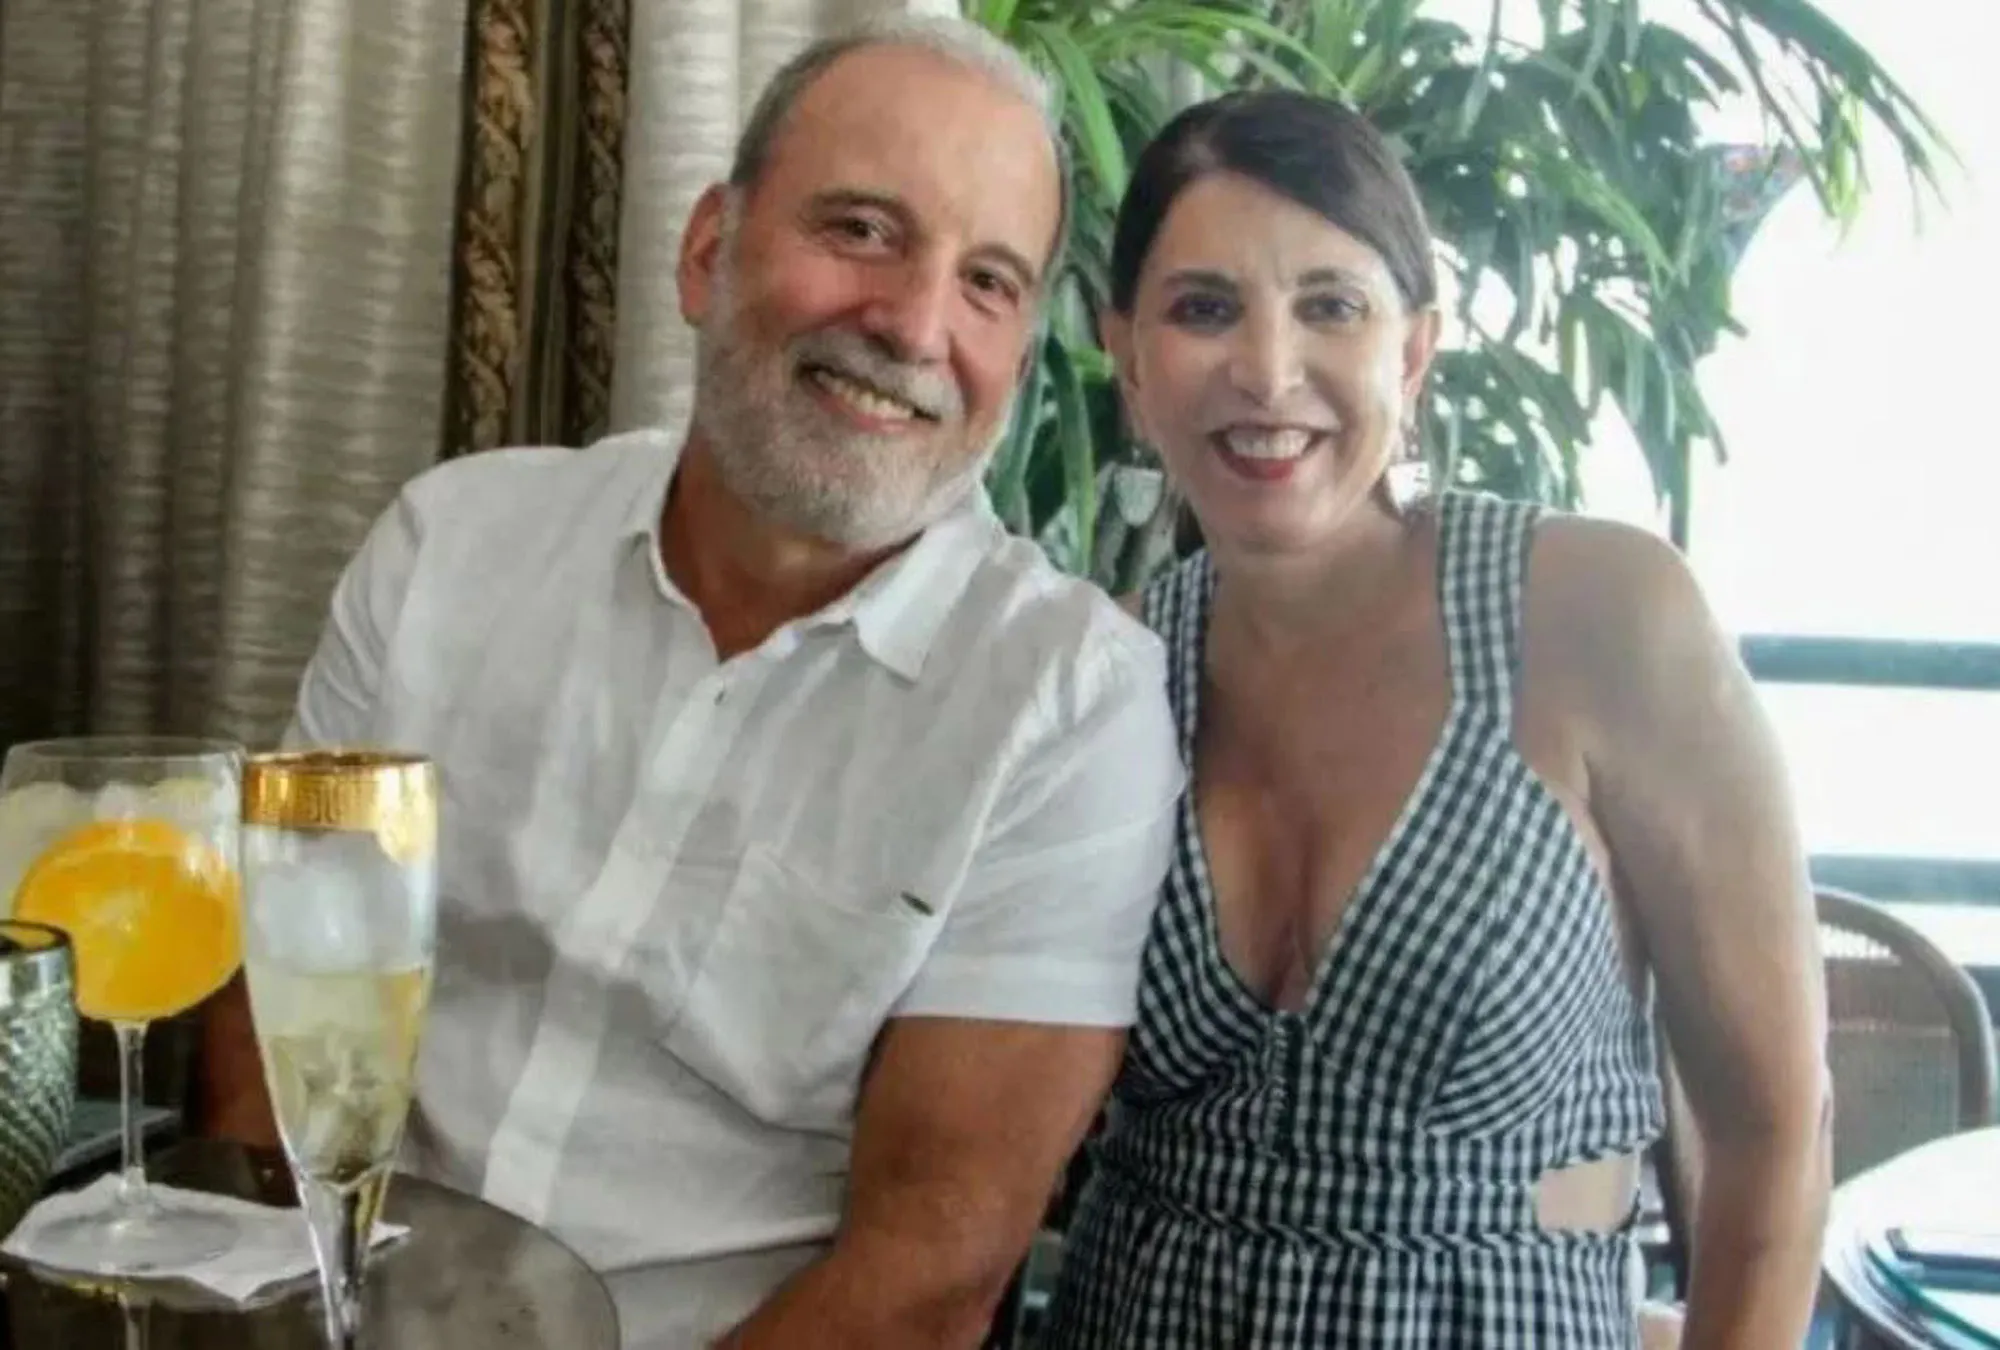 Мільярдера знайшли мертвим біля дружини у розкішному особняку: відео